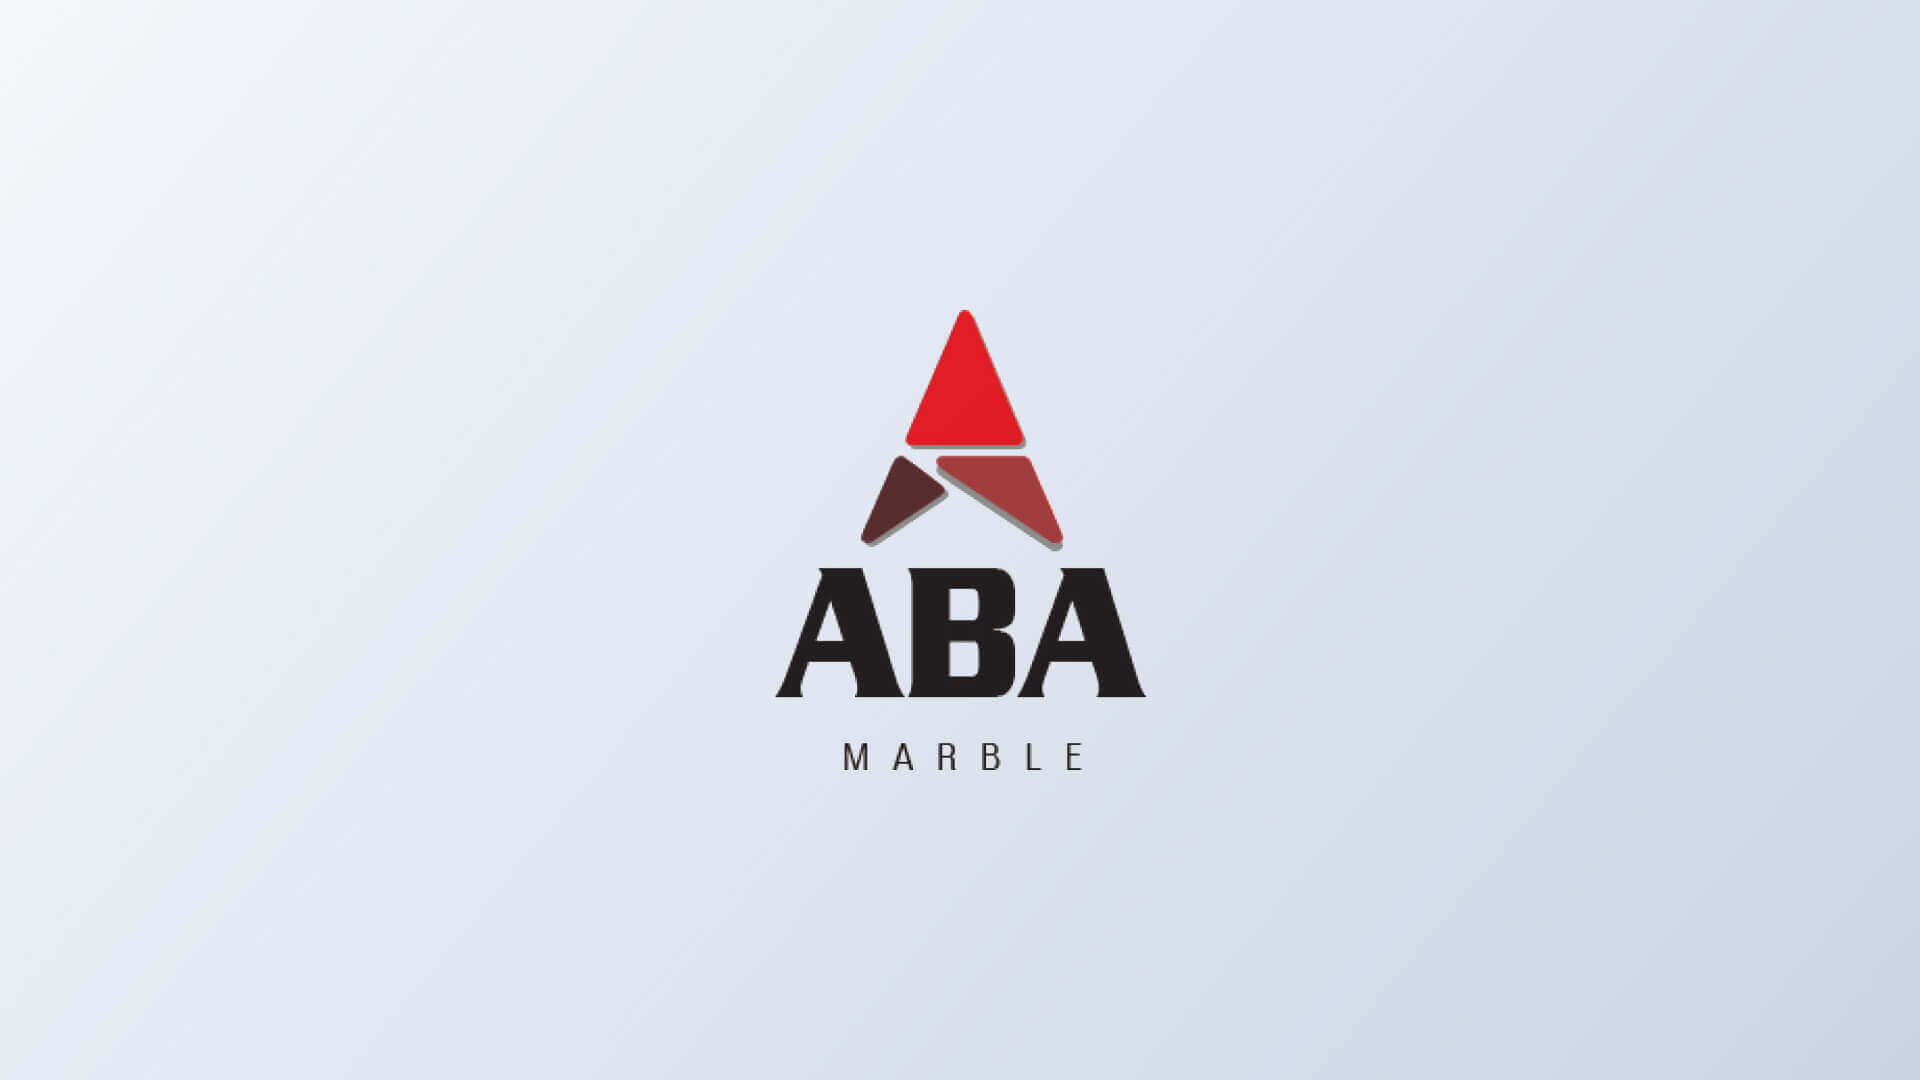 Aba Marble mermer firması logo tasarımı